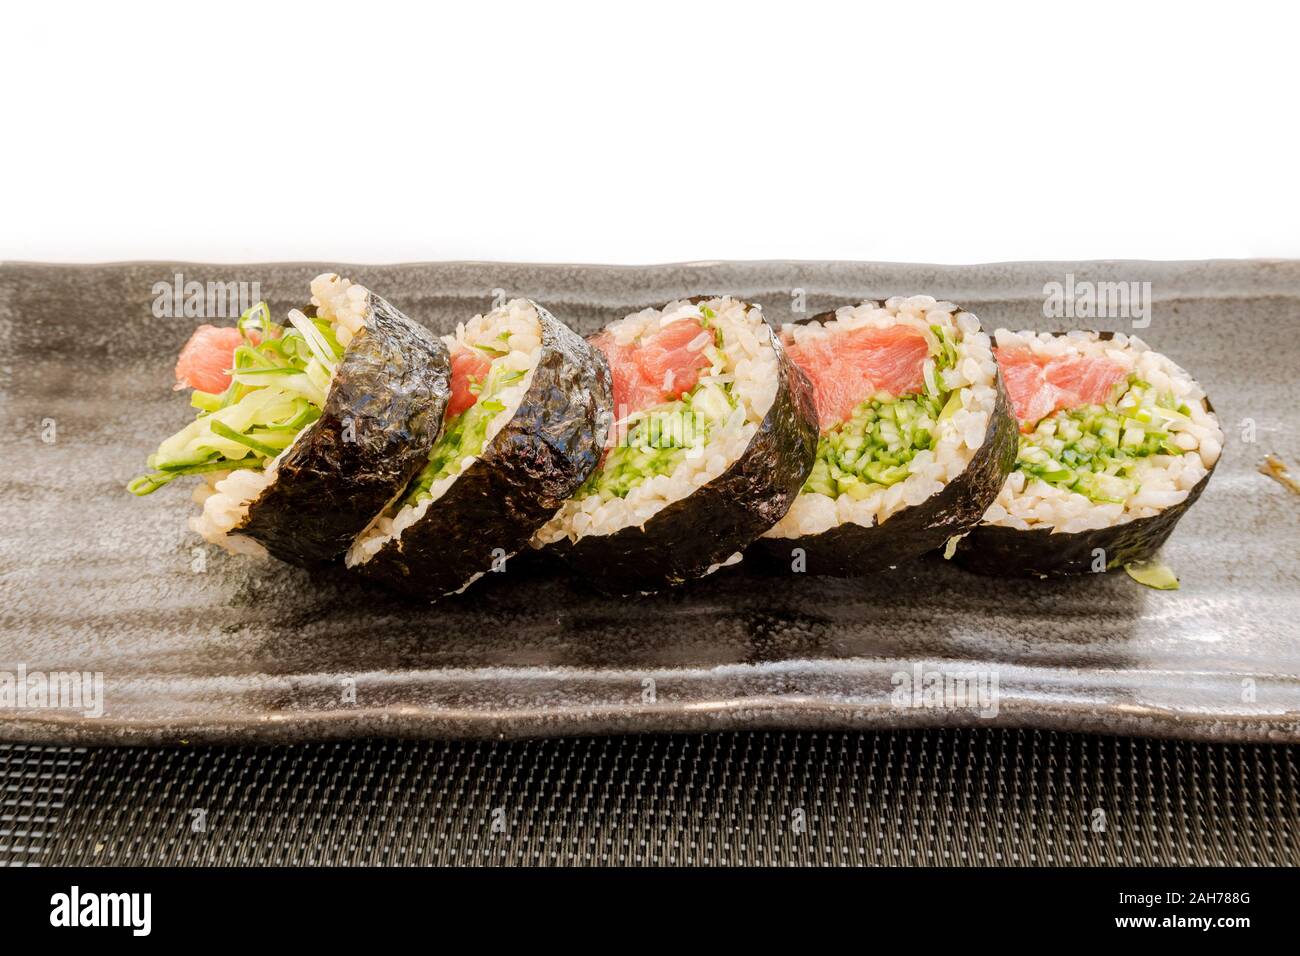 5 rouleaux de sushi maki recouvert d'algues sur une assiette. Banque D'Images